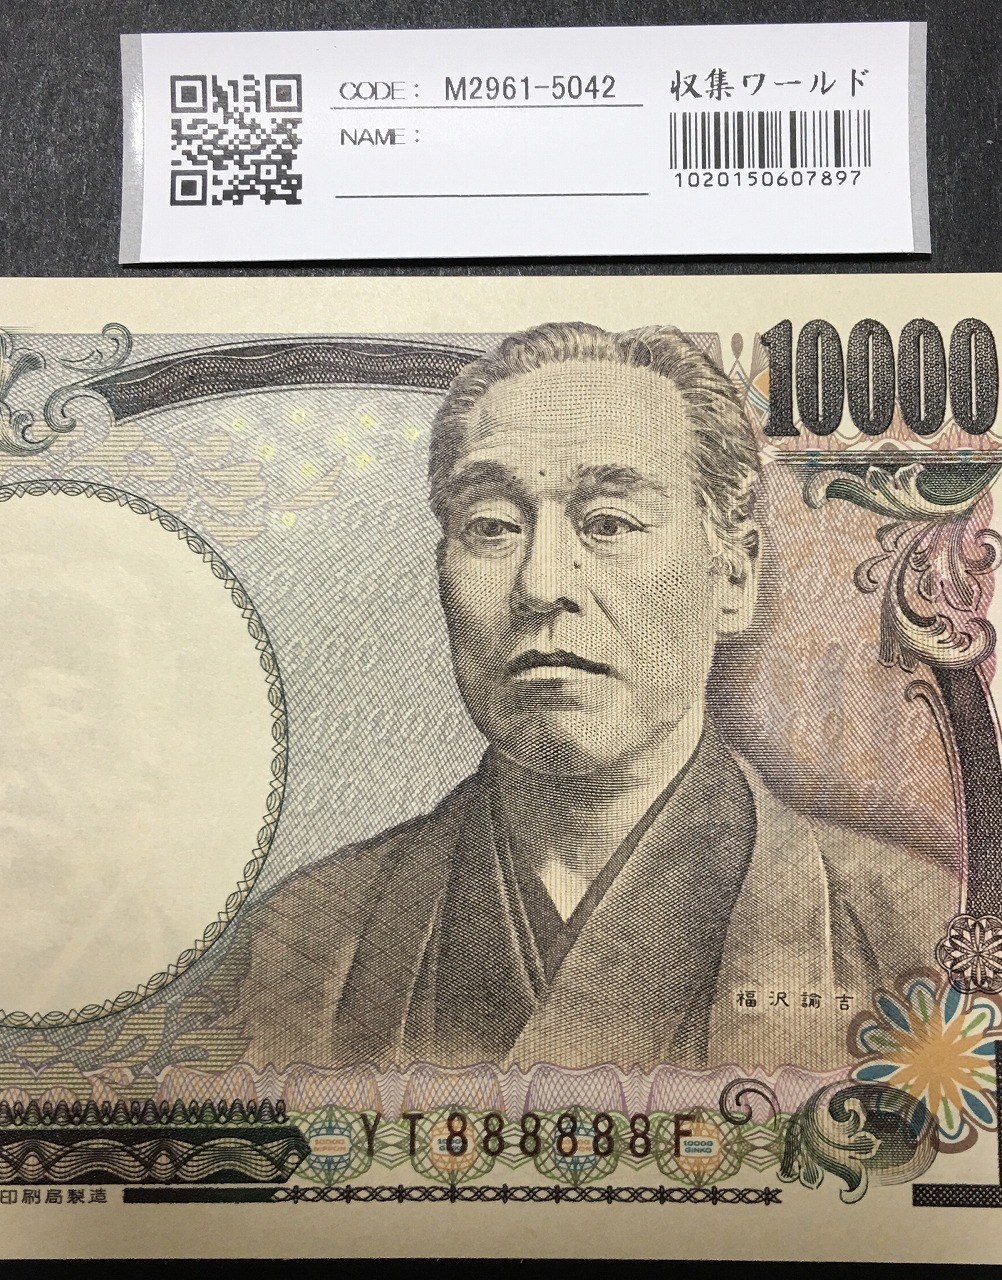 新福沢 1万円紙幣 国立印刷局 褐色 珍番 YT888888F 値下げ